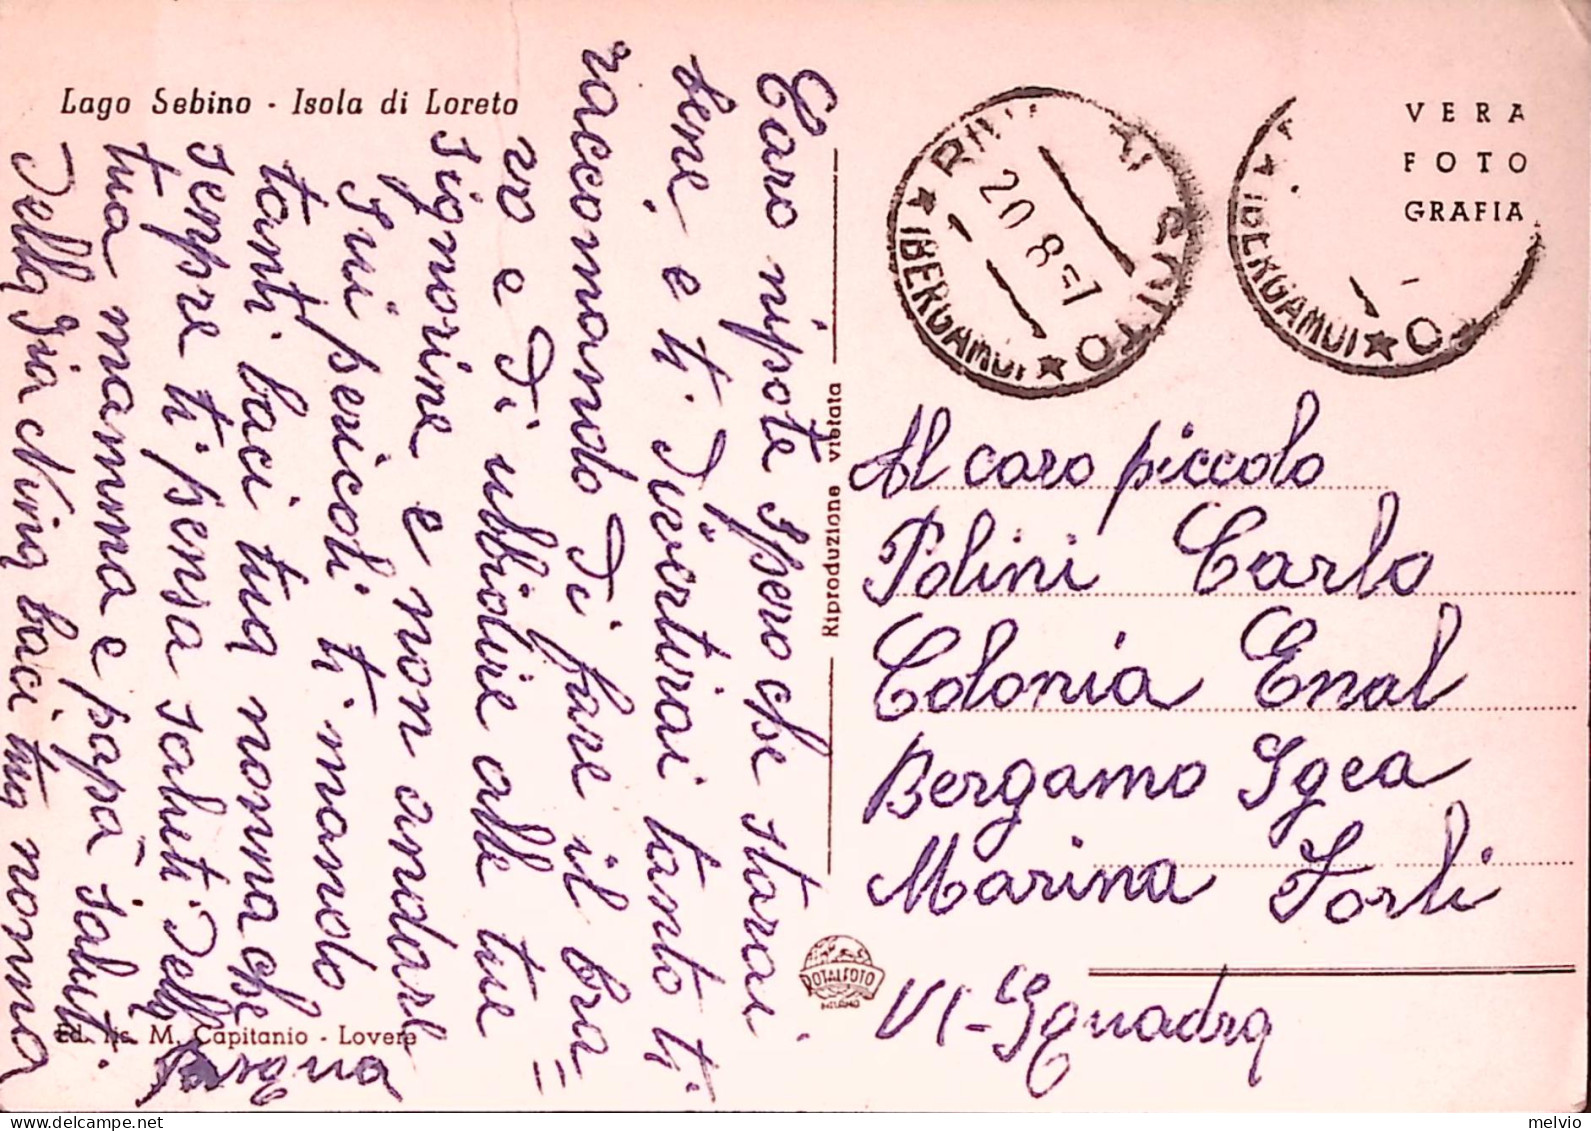 1957-LAGO SEBINO Isola Di Loreto Viaggiata Riva Di Solto (20.8) Francobollo Cadu - Bergamo